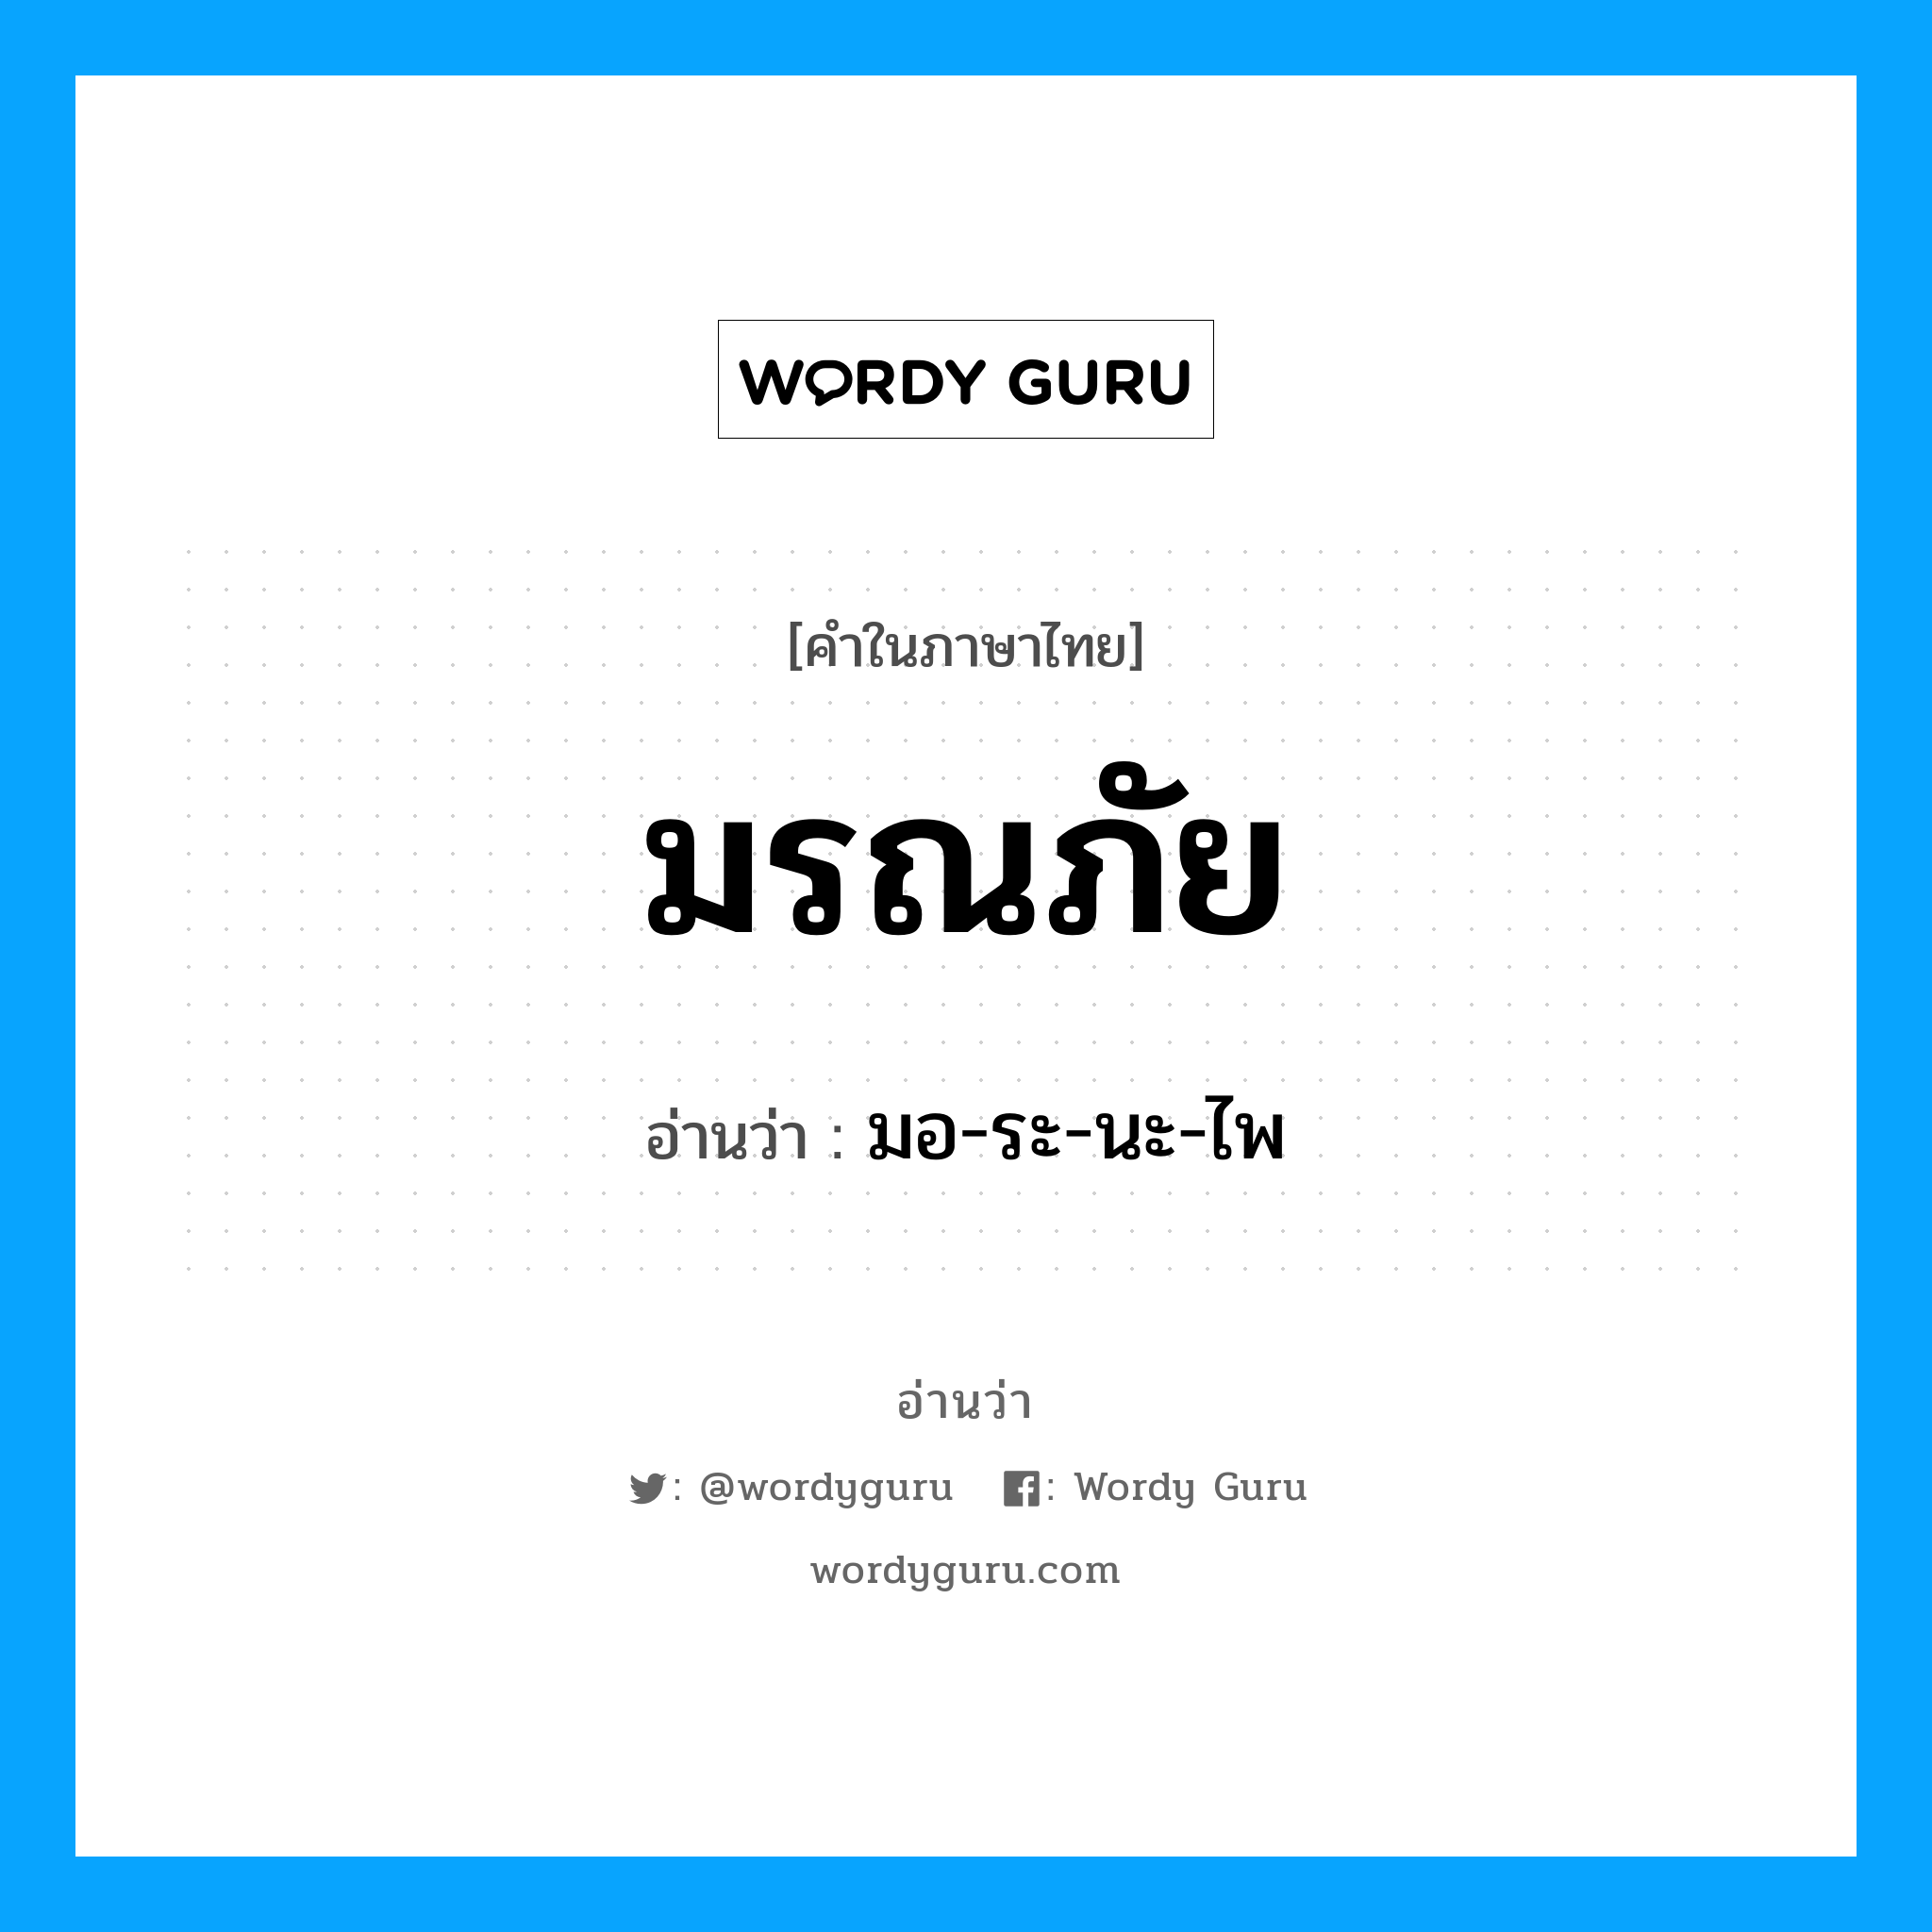 มอ-ระ-นะ-ไพ เป็นคำอ่านของคำไหน?, คำในภาษาไทย มอ-ระ-นะ-ไพ อ่านว่า มรณภัย